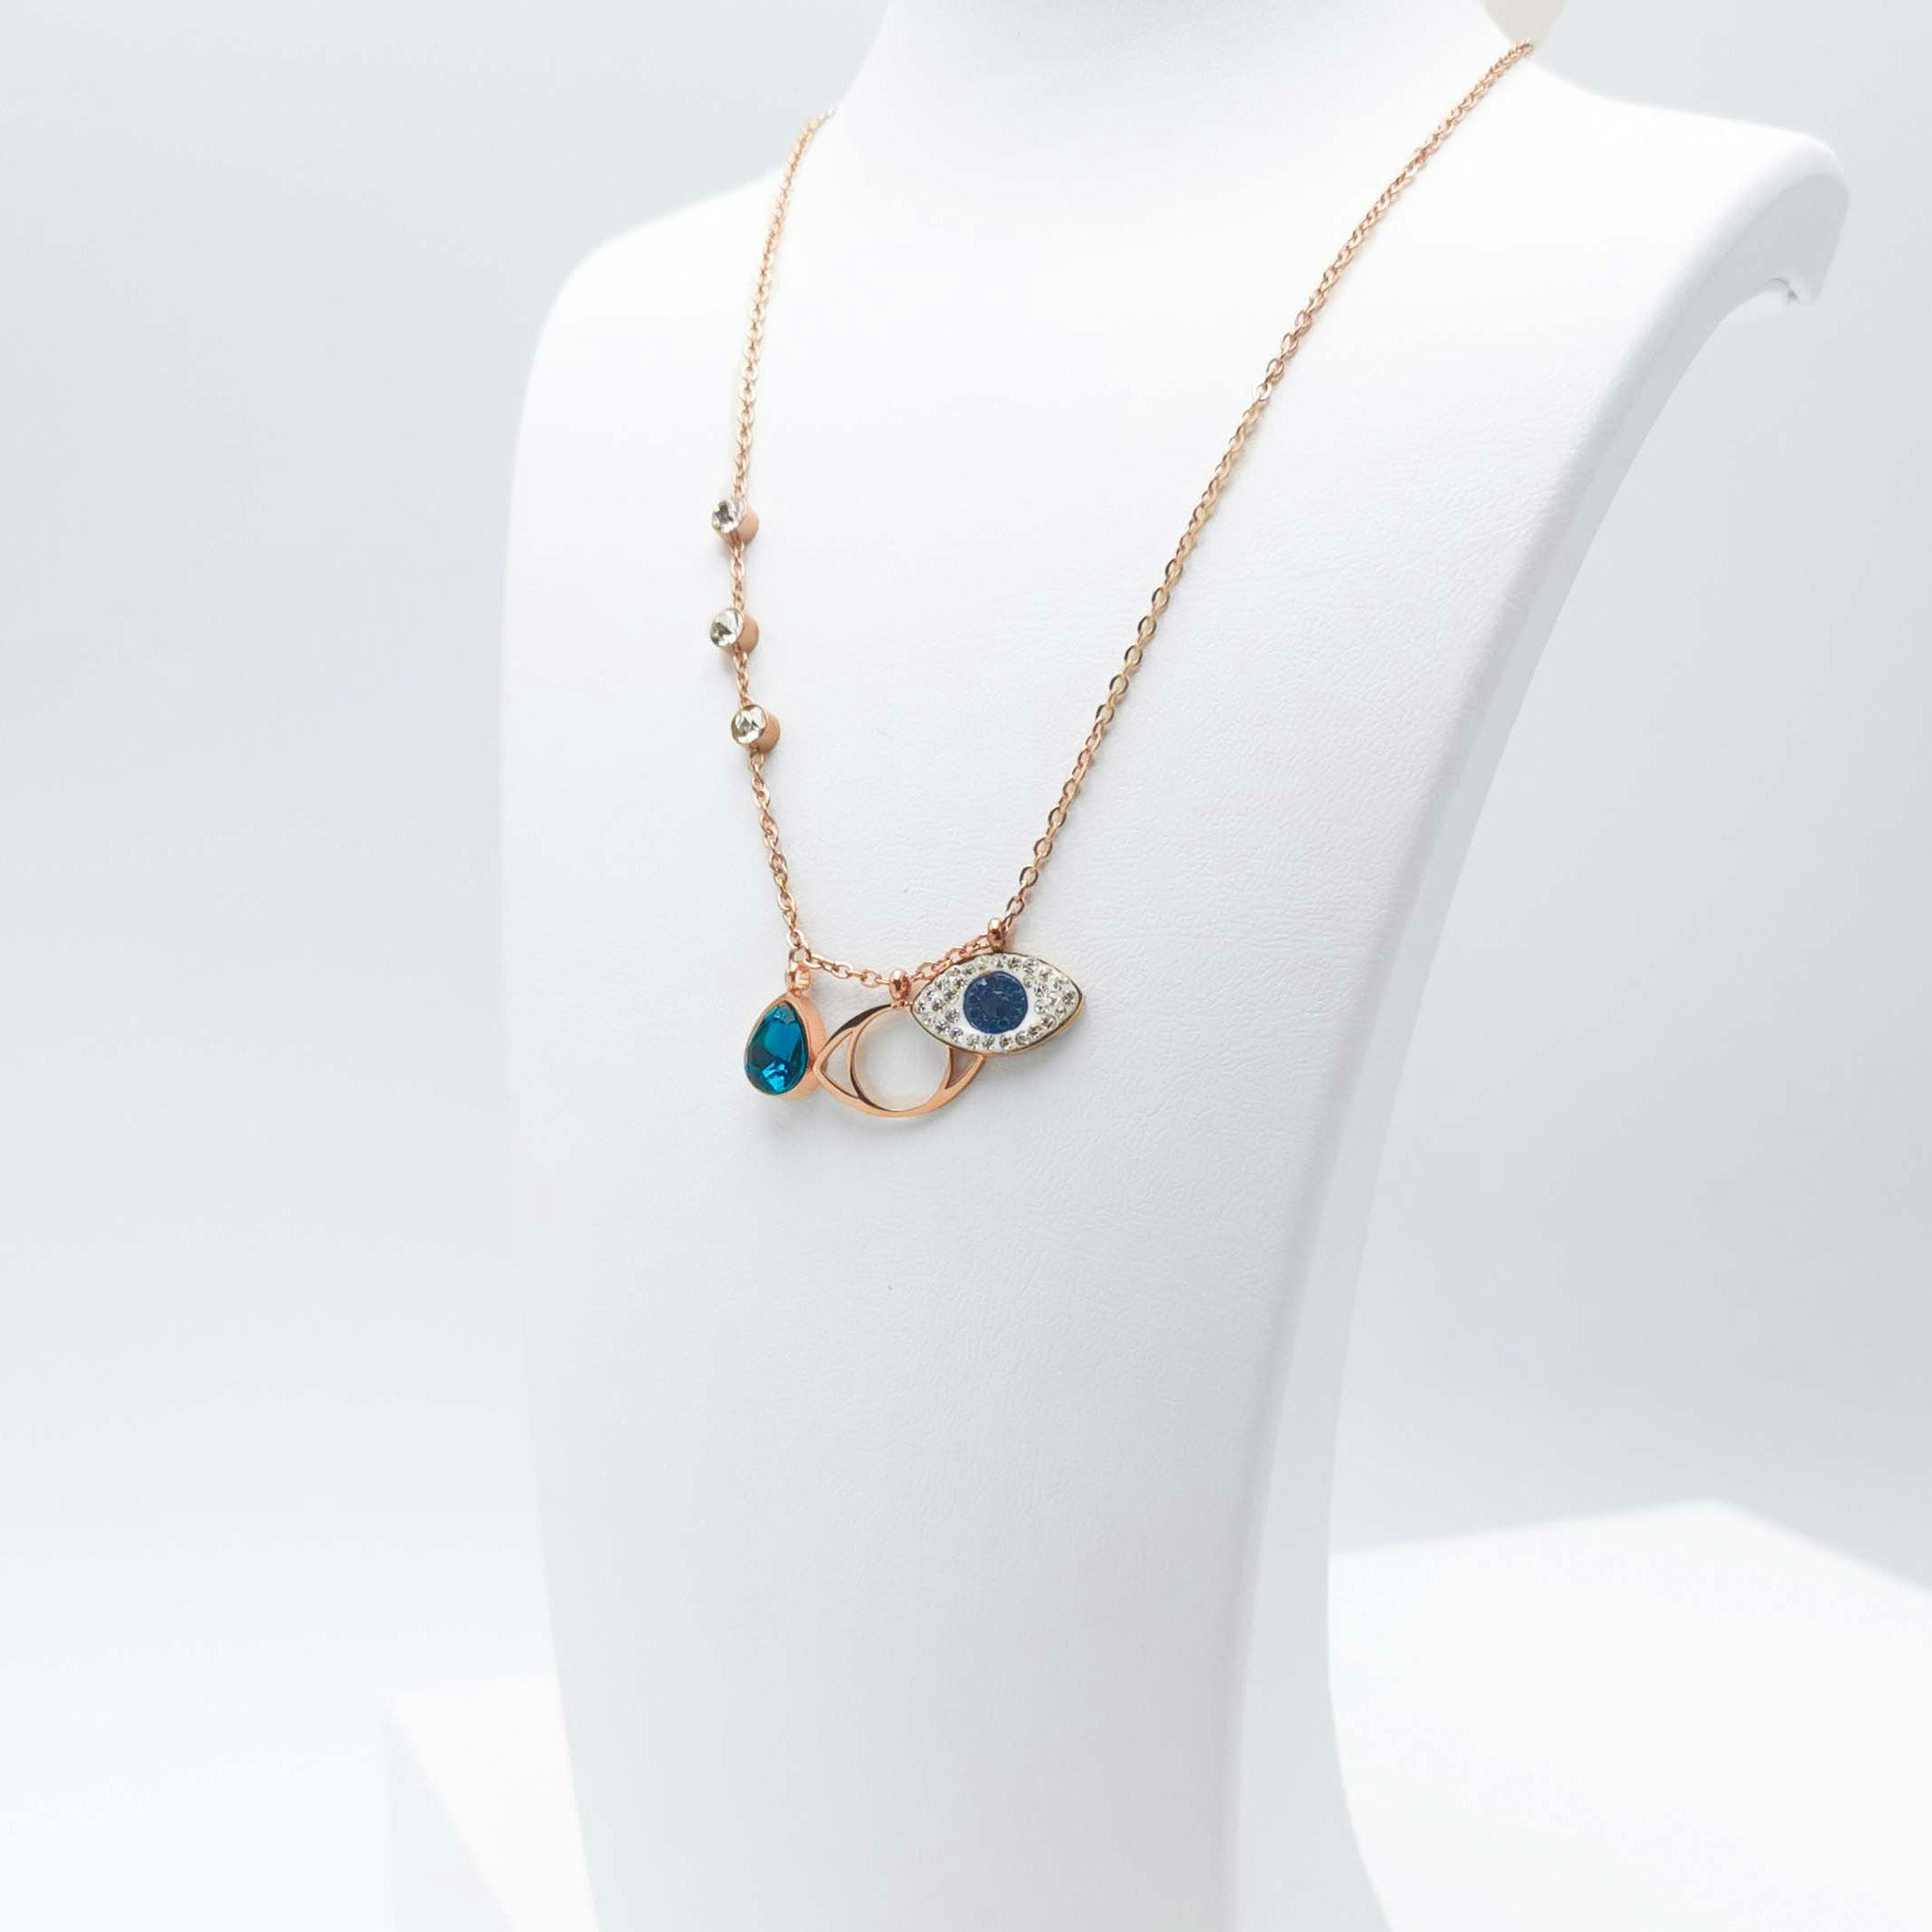 Lady Serenity bild 3 Dam halsband. Modern, stilren och exklusive Smycke.